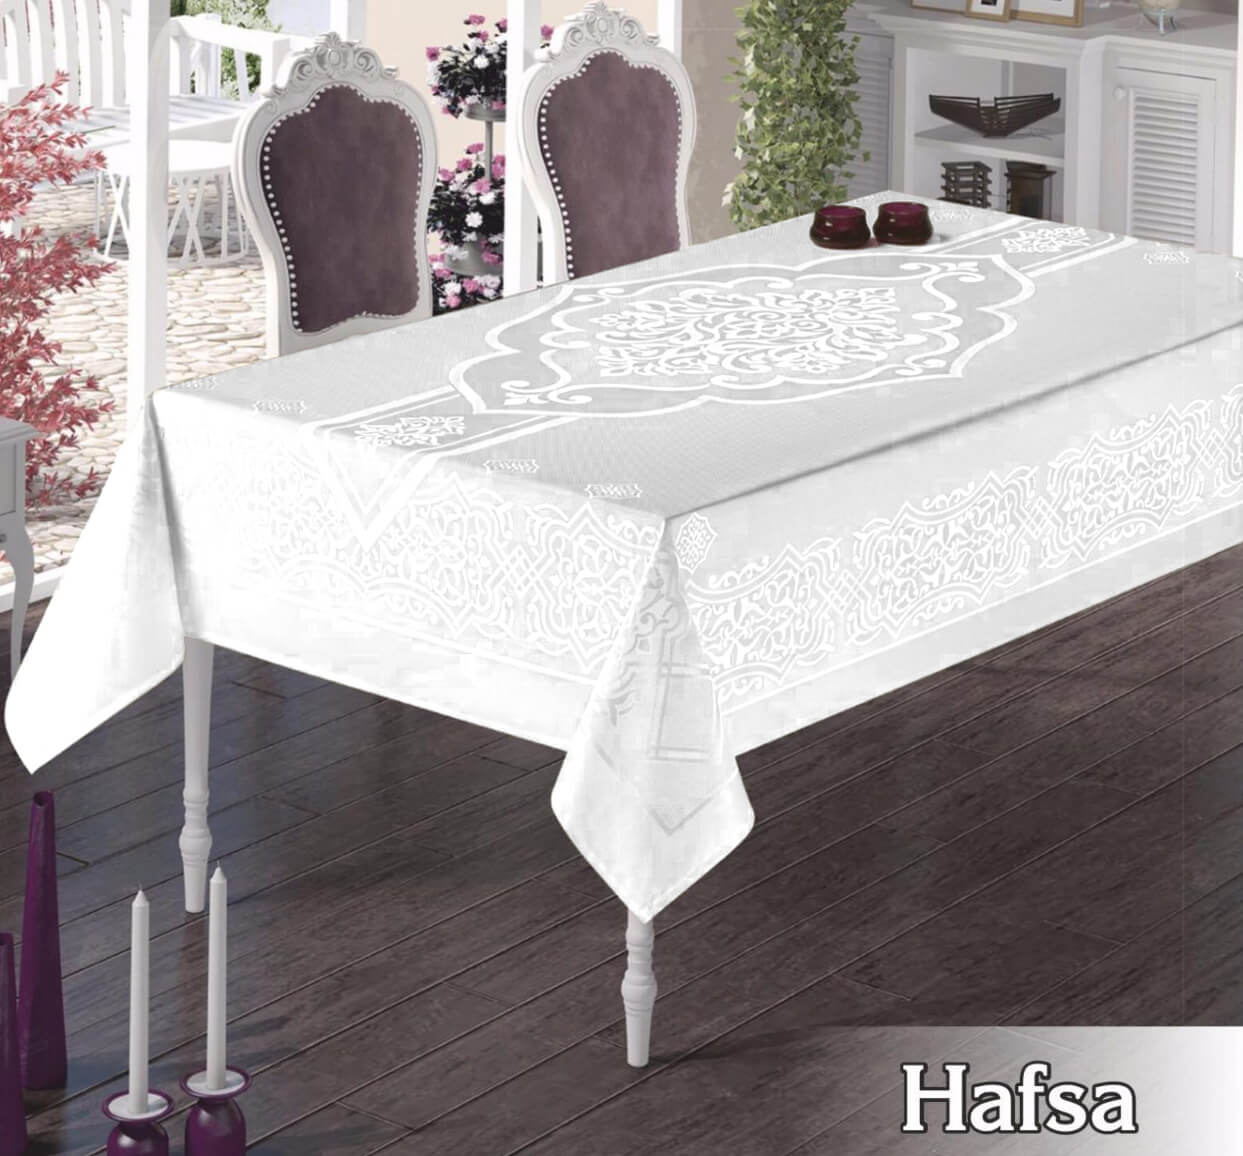 Скатерть Hafsa цвет: белый (160х300 см), размер 160х300 см efr895325 Скатерть Hafsa цвет: белый (160х300 см) - фото 1